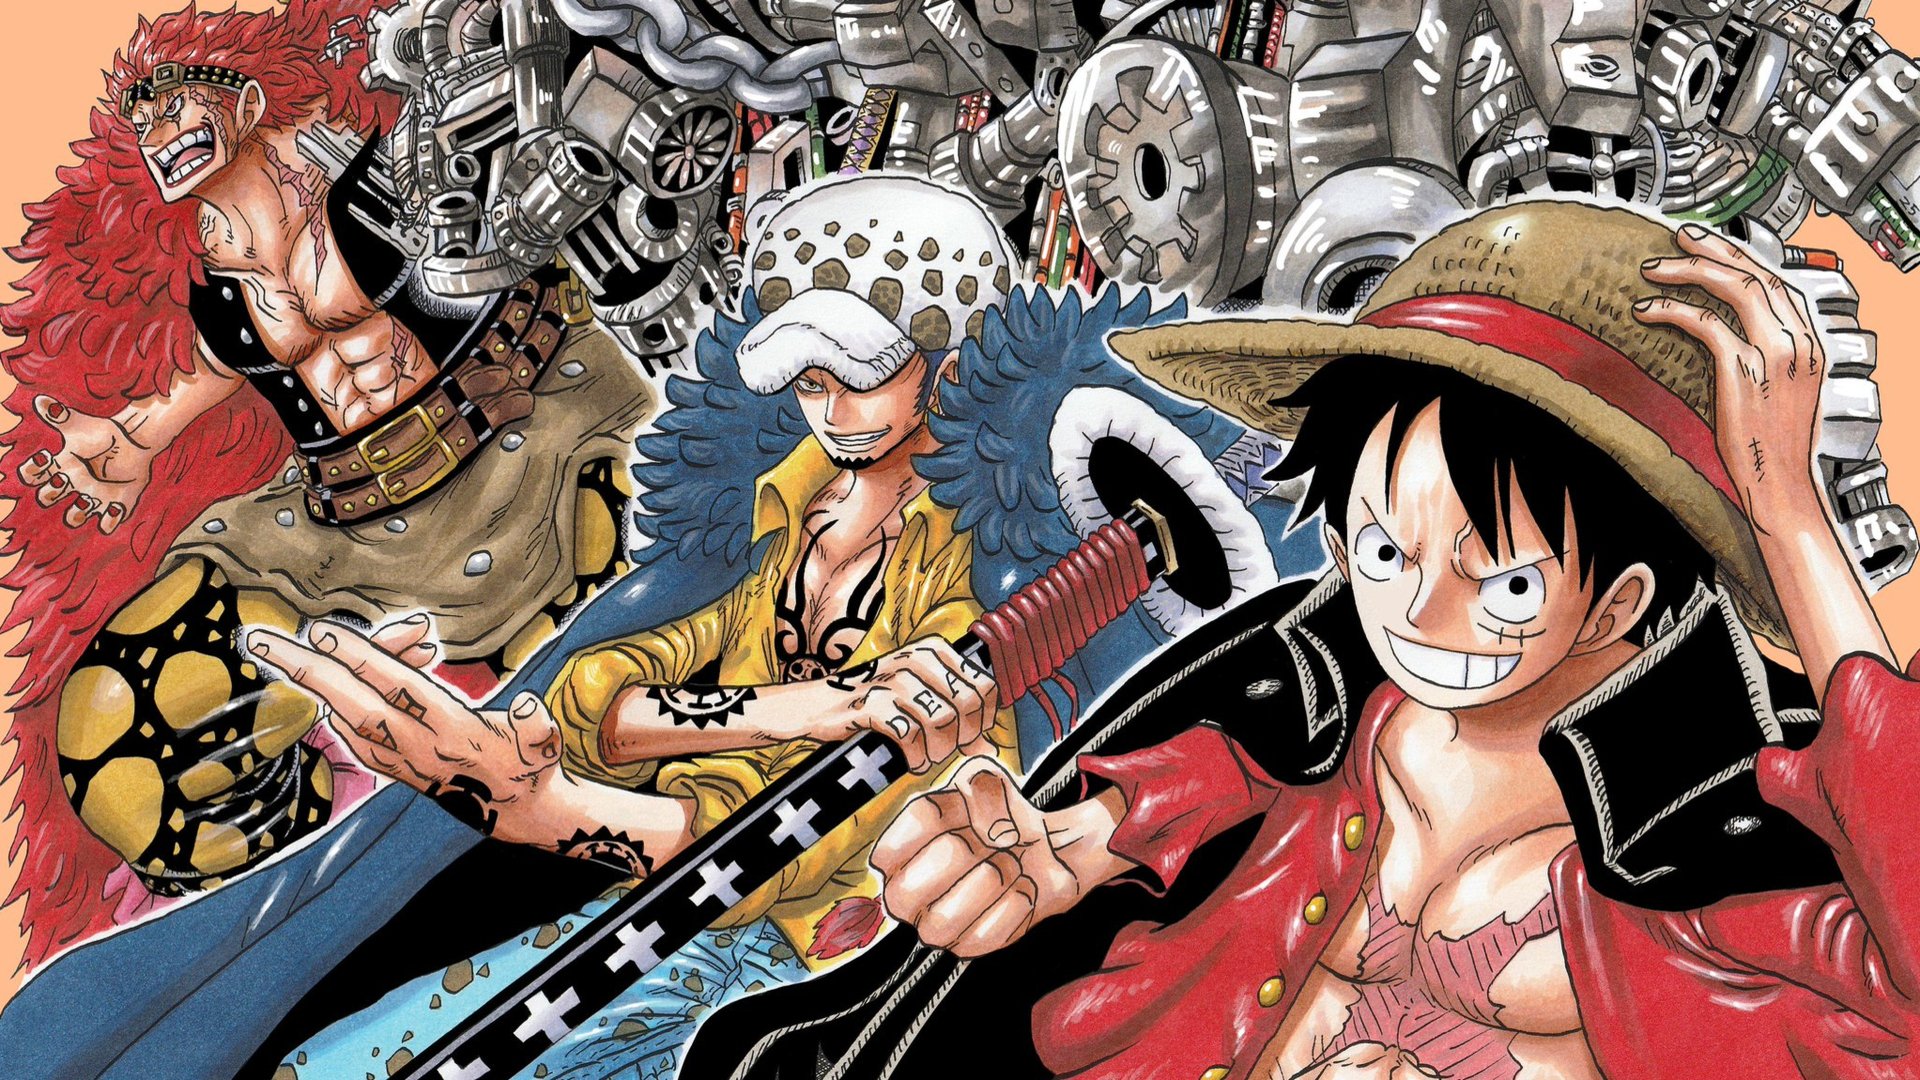 Hình ảnh One Piece và cặp đôi sẽ khiến bạn cảm thấy thú vị và hào hứng. Bạn sẽ được ngắm nhìn những chiến binh hải tặc nổi tiếng nhất thế giới và cặp đôi lãng mạn trong trang phục đậm chất manga. Đây chắc chắn là những hình ảnh mà bạn không nên bỏ lỡ.